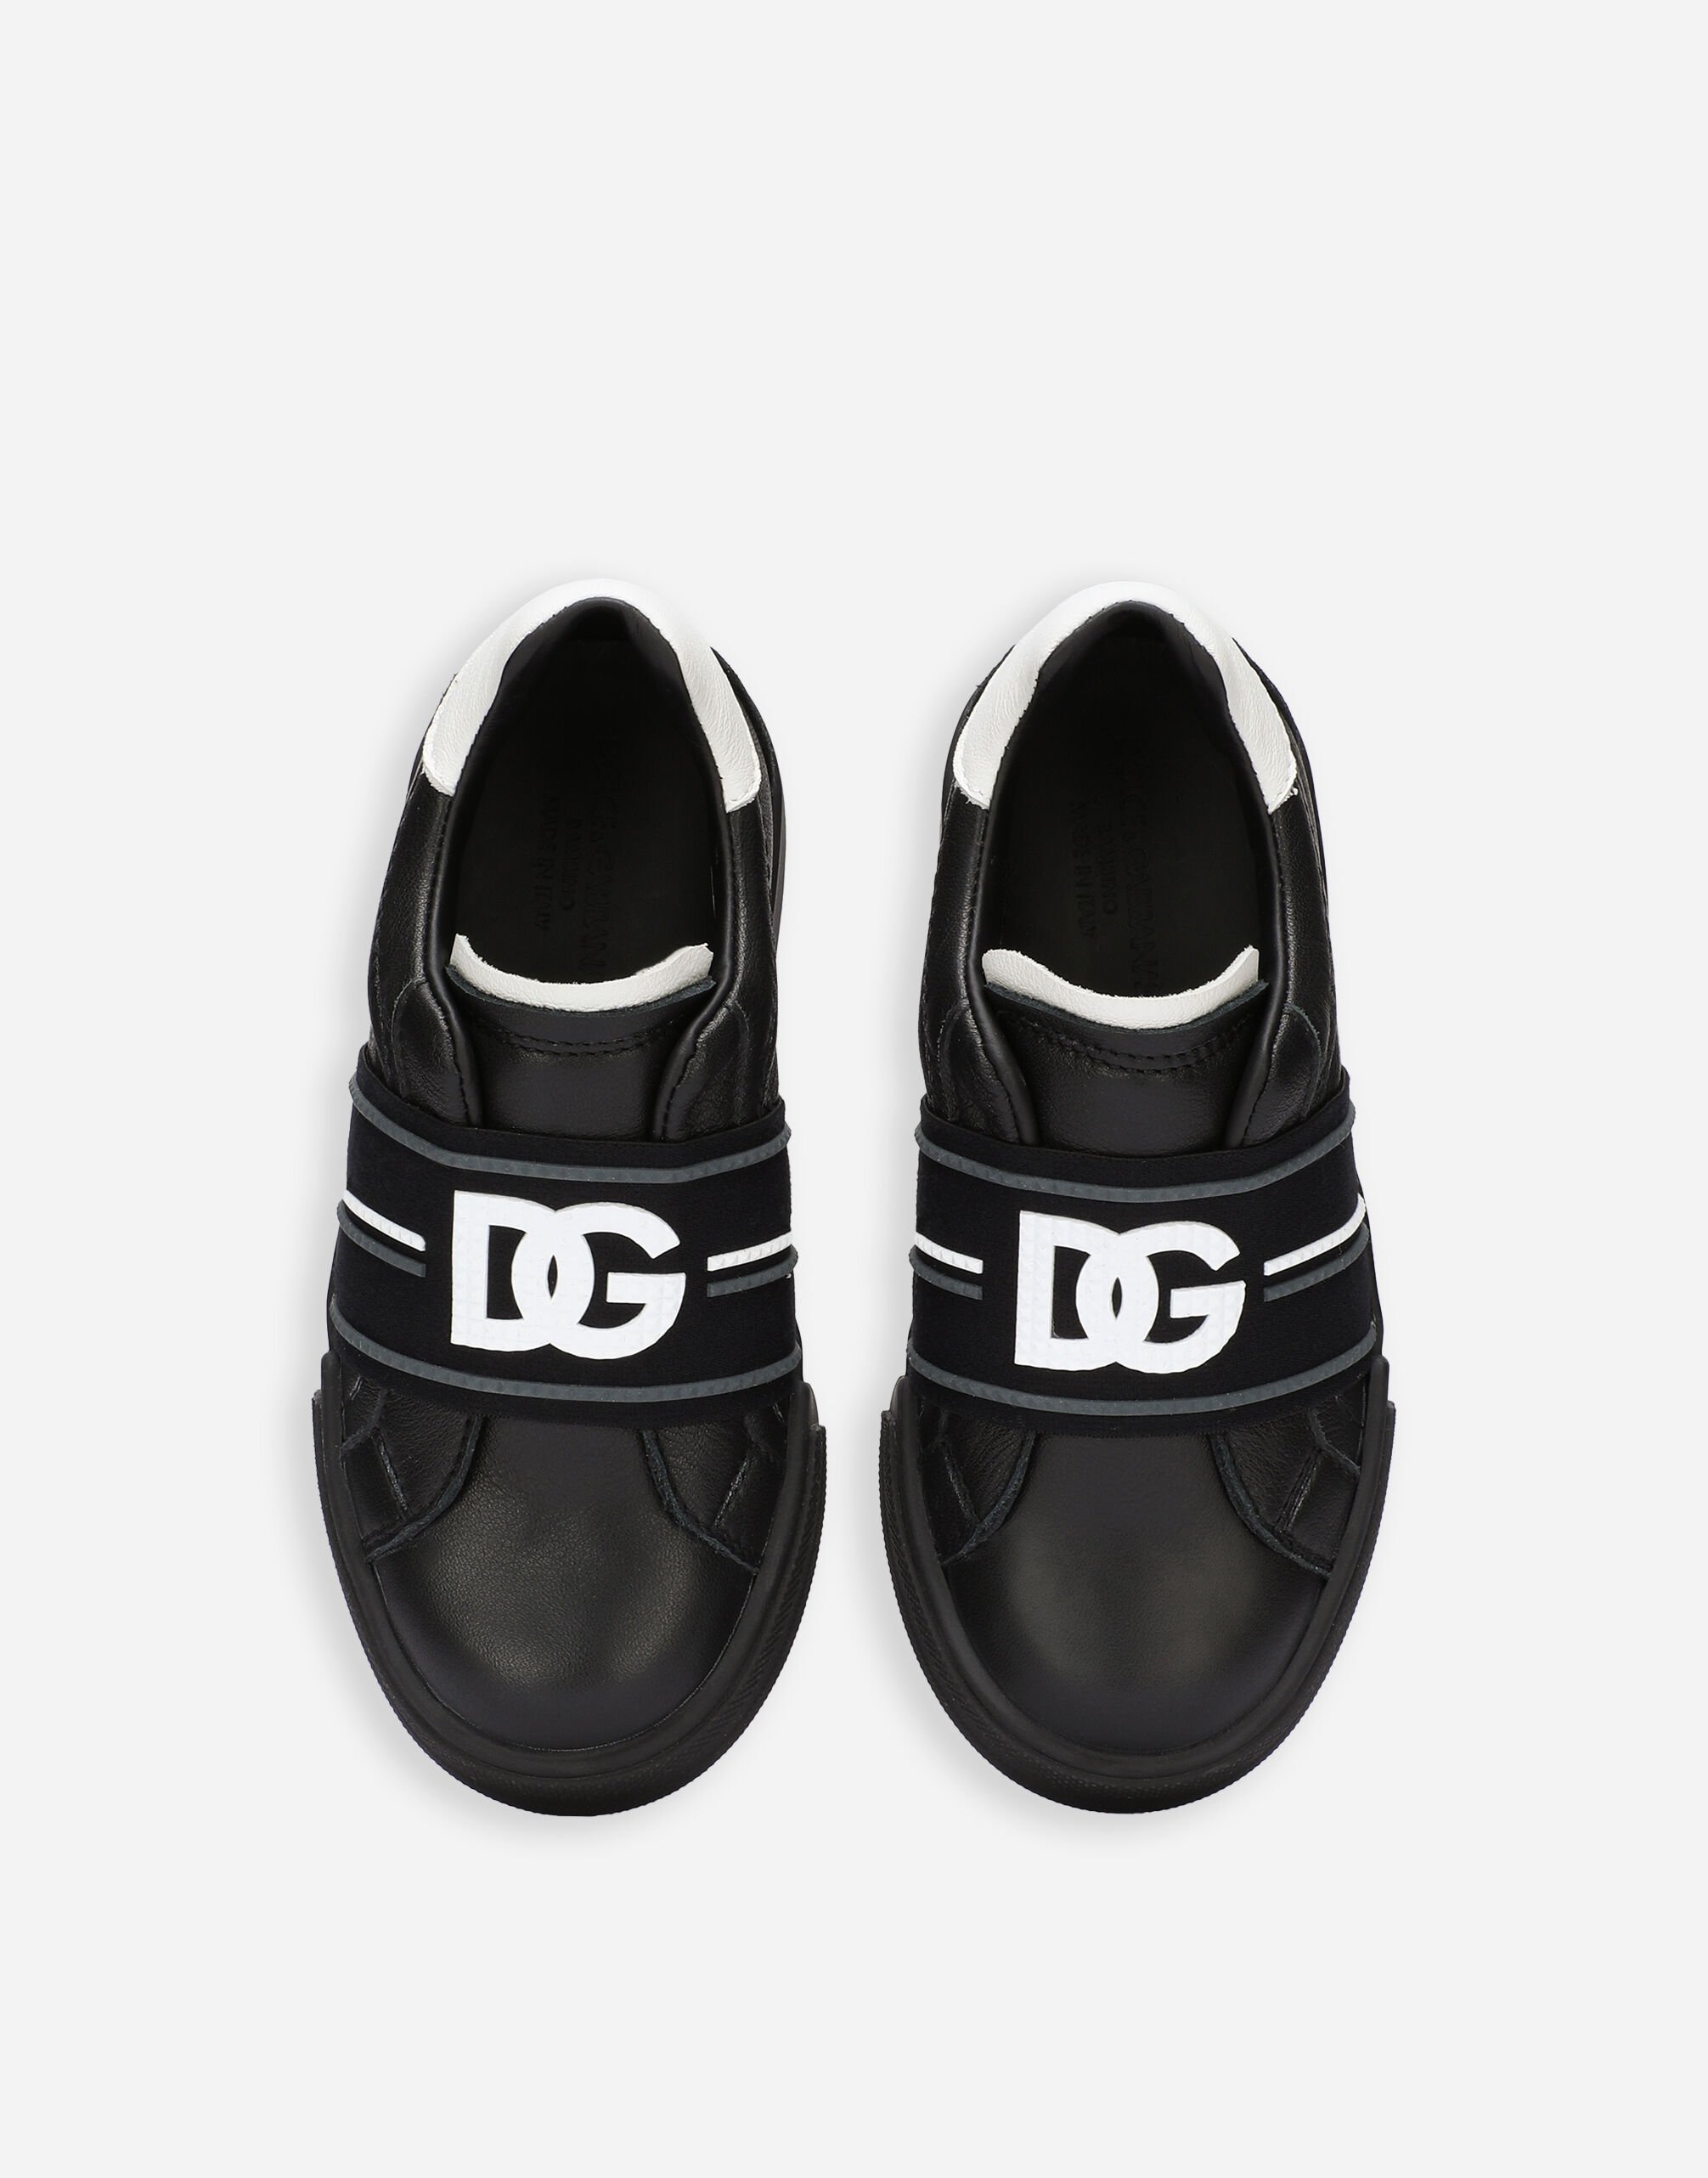 Portofino slip-on sneakers with DG logo